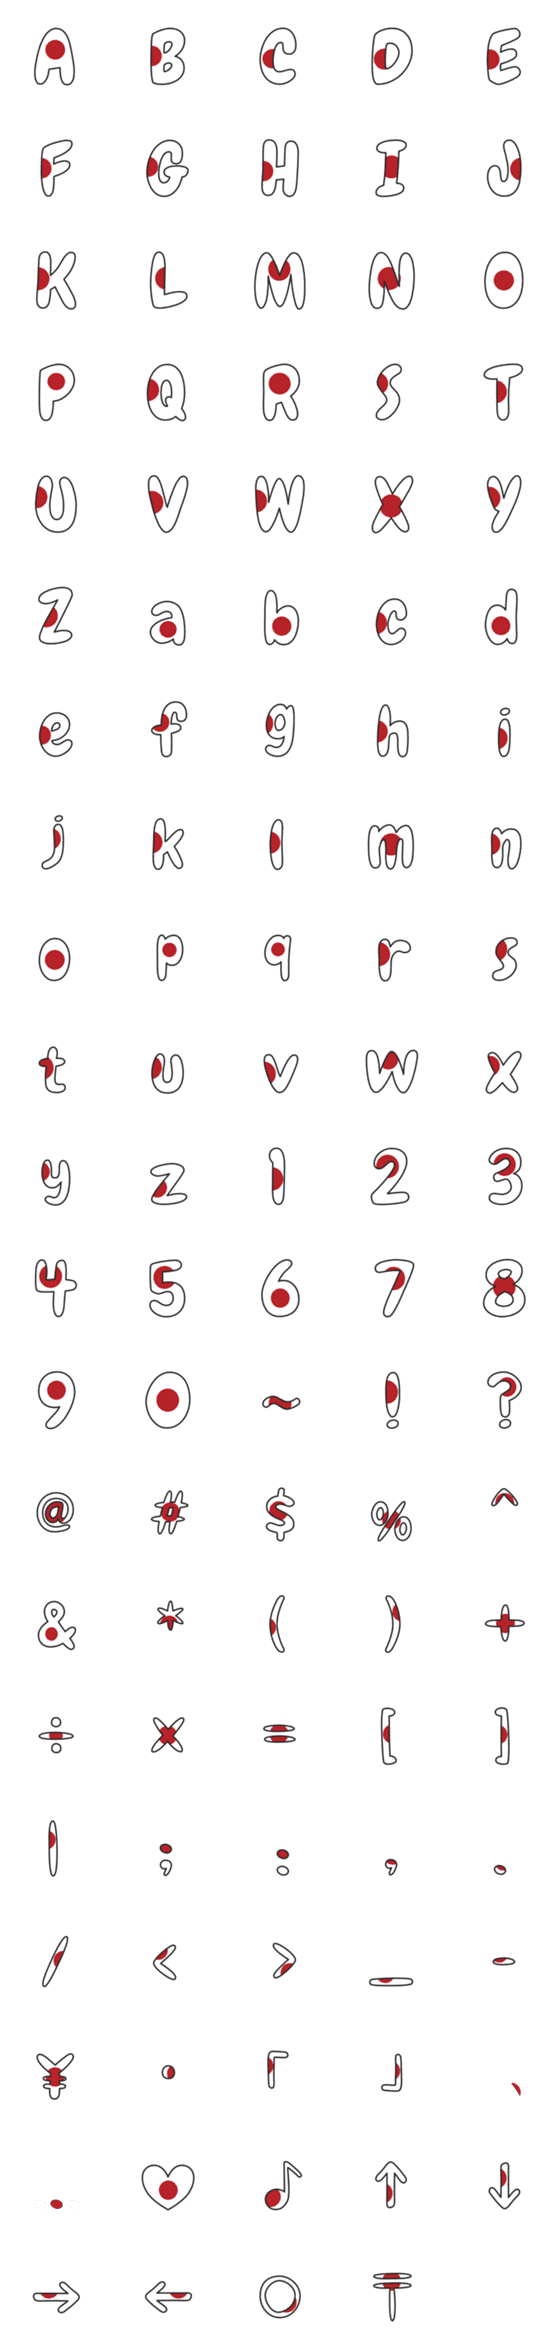 [LINE絵文字]日本のスタイルの英語のアルファベットの旗の画像一覧